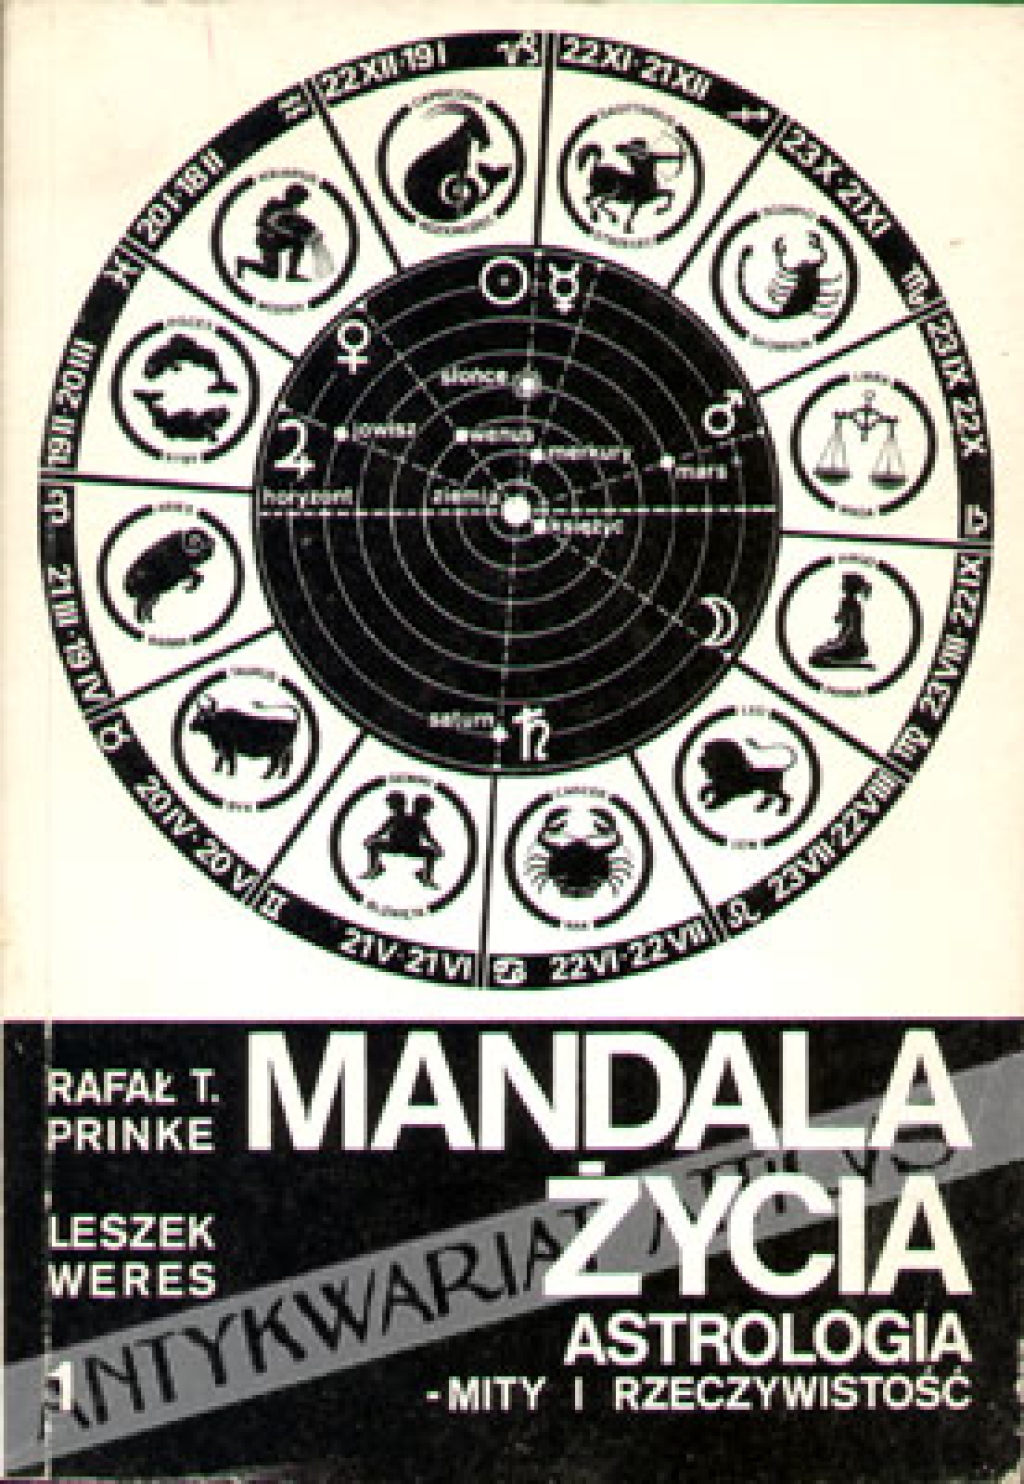 Mandala życia. Astrologia - mity i rzeczywistość, t. I-II